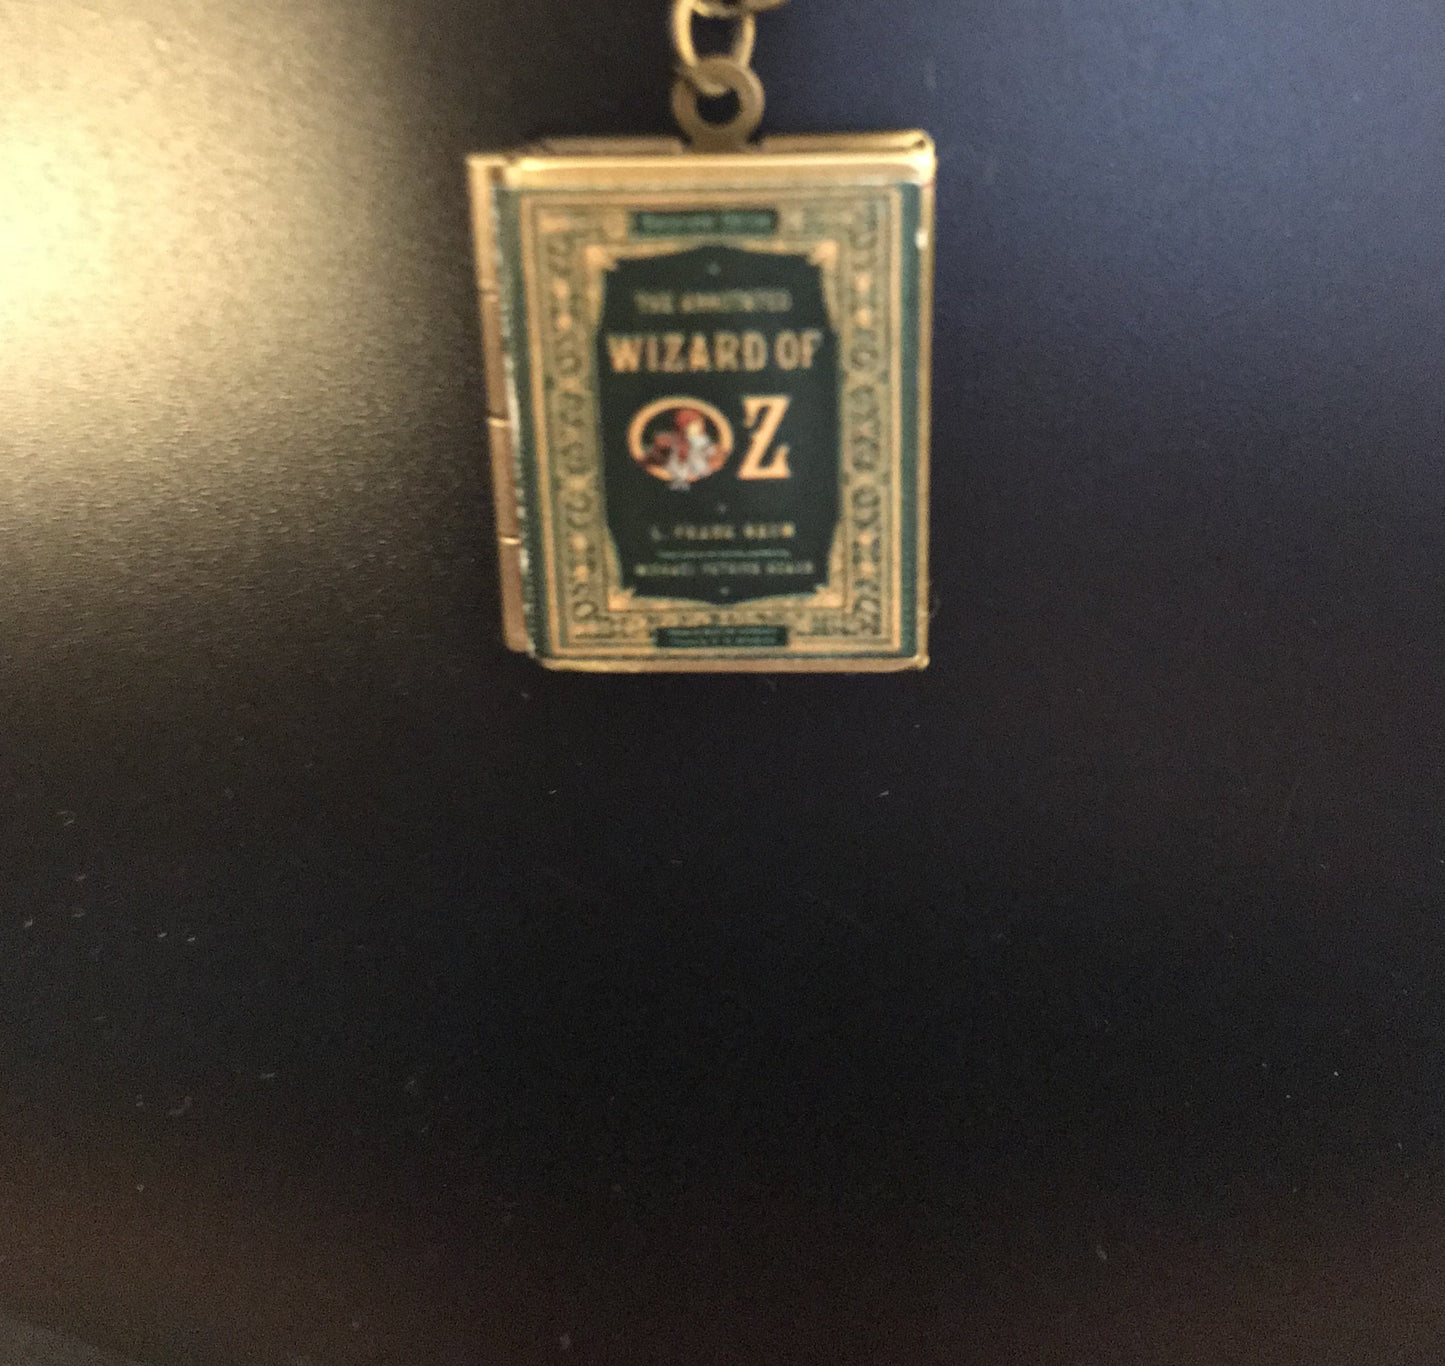 Book Locket "Wizard of Oz" Keychain Bronze